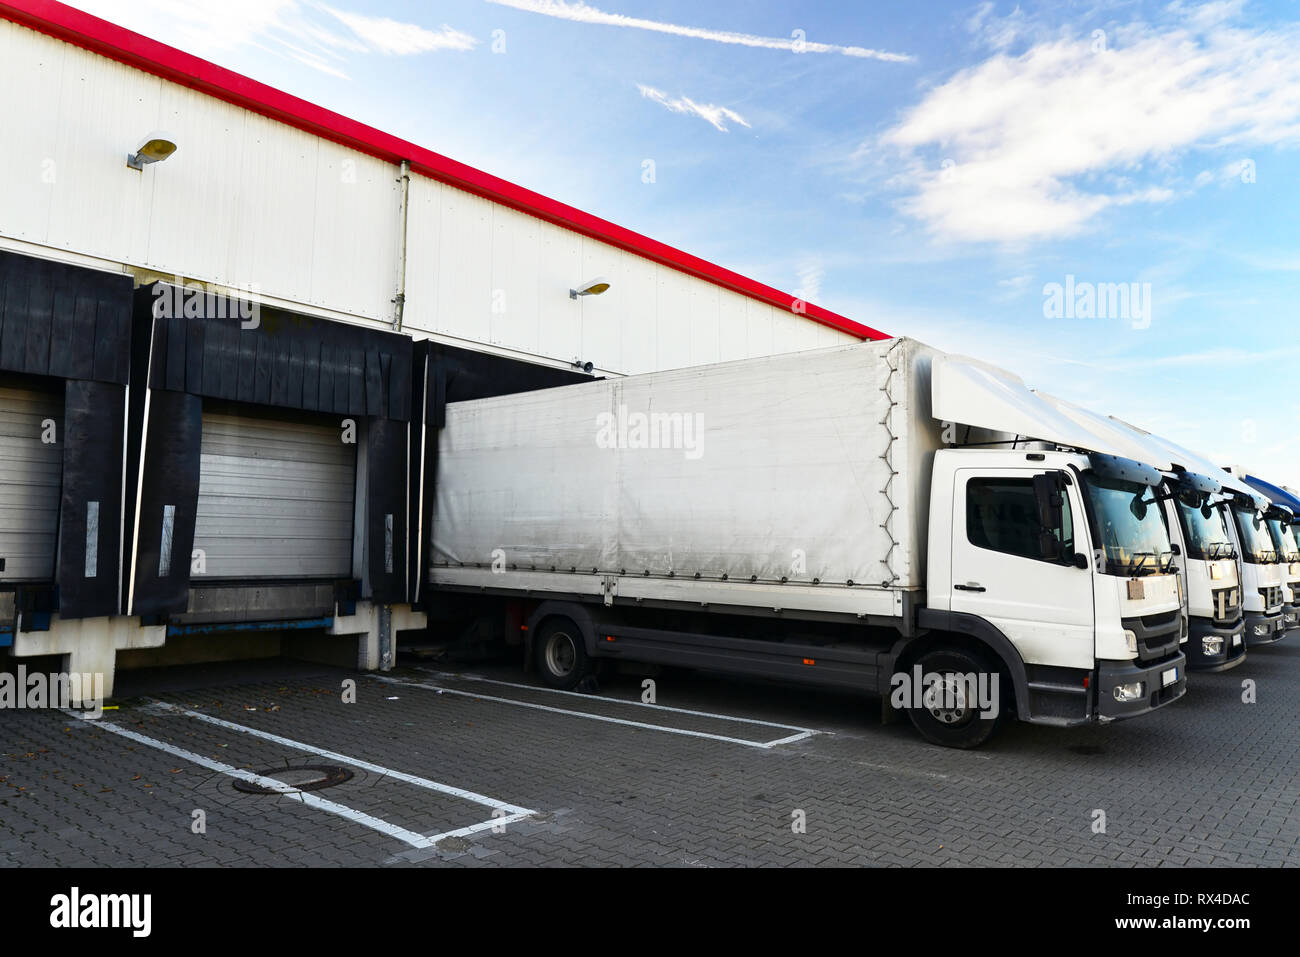 La logistique et le stockage des marchandises - Chargement et déchargement des marchandises pour le transport par camion Banque D'Images